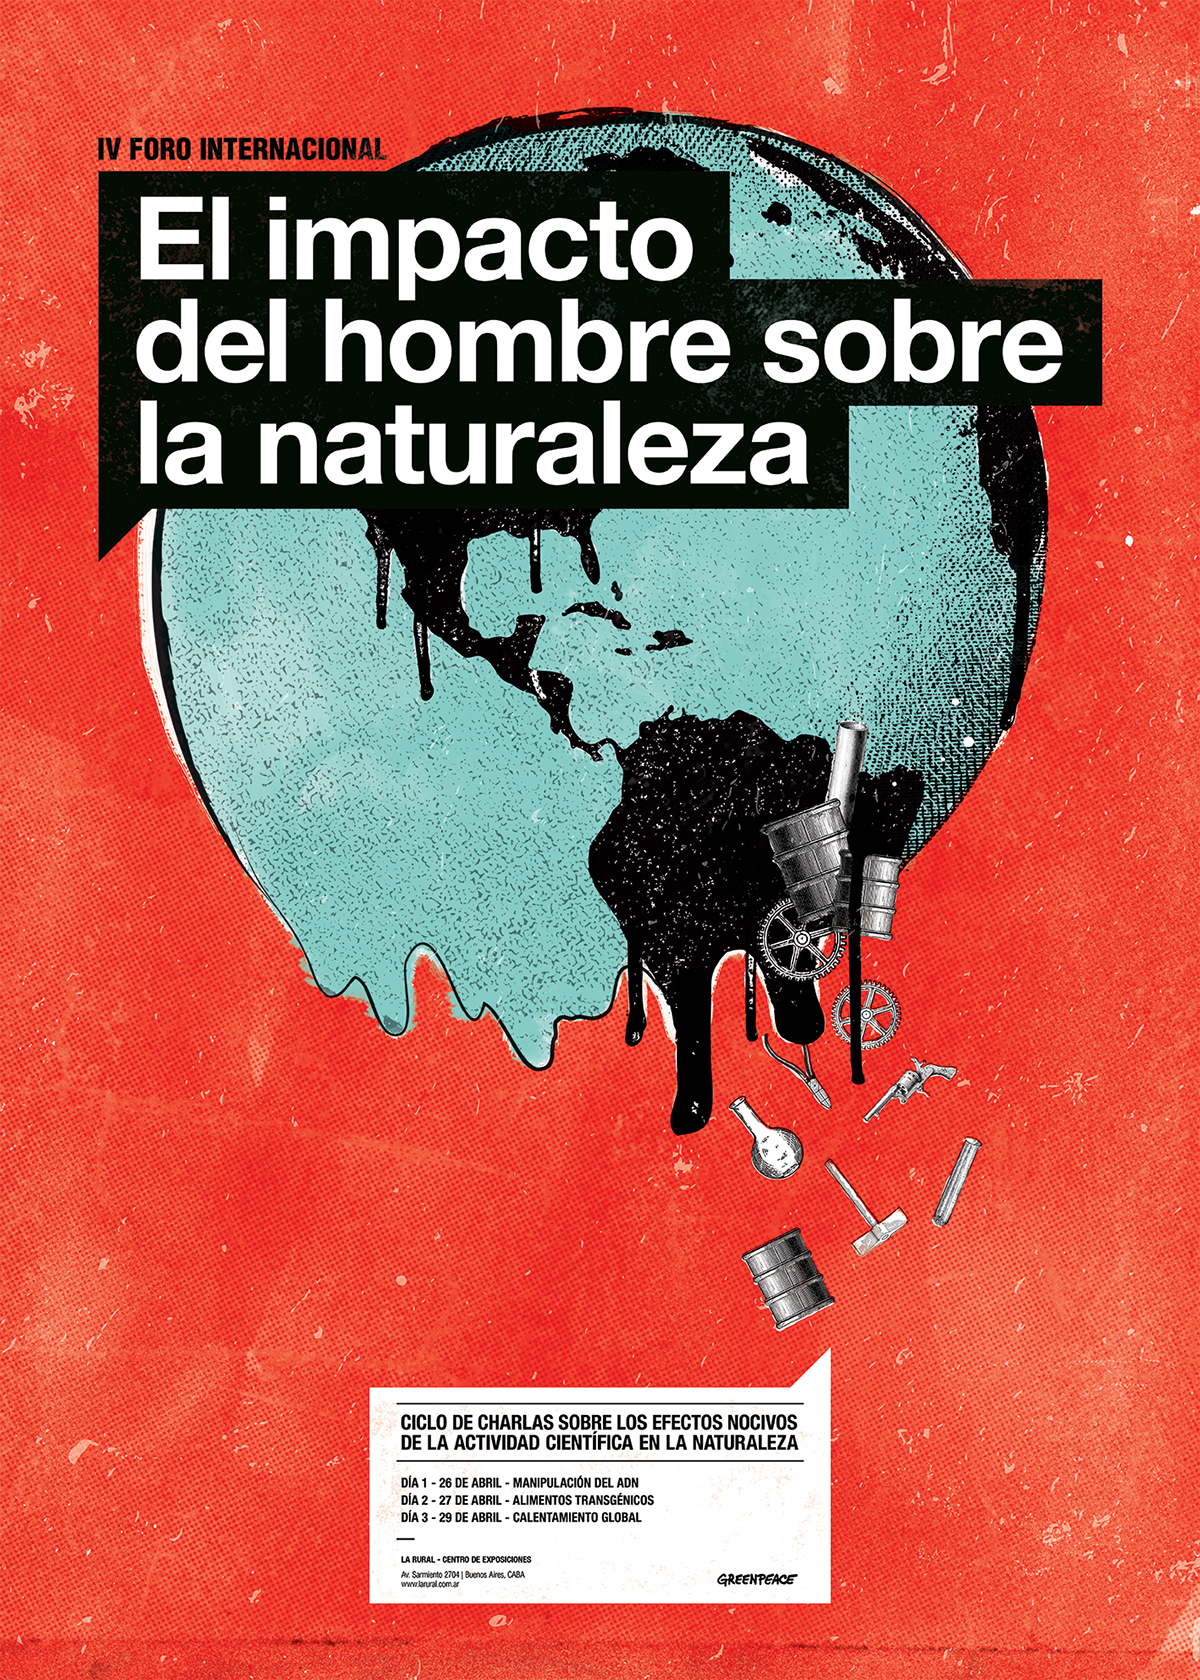 Gabriele uba afiche poster Greenpeace estados del mundo Contaminación adn mundo pastillas Alimentos transgenicos diseño ilustracion